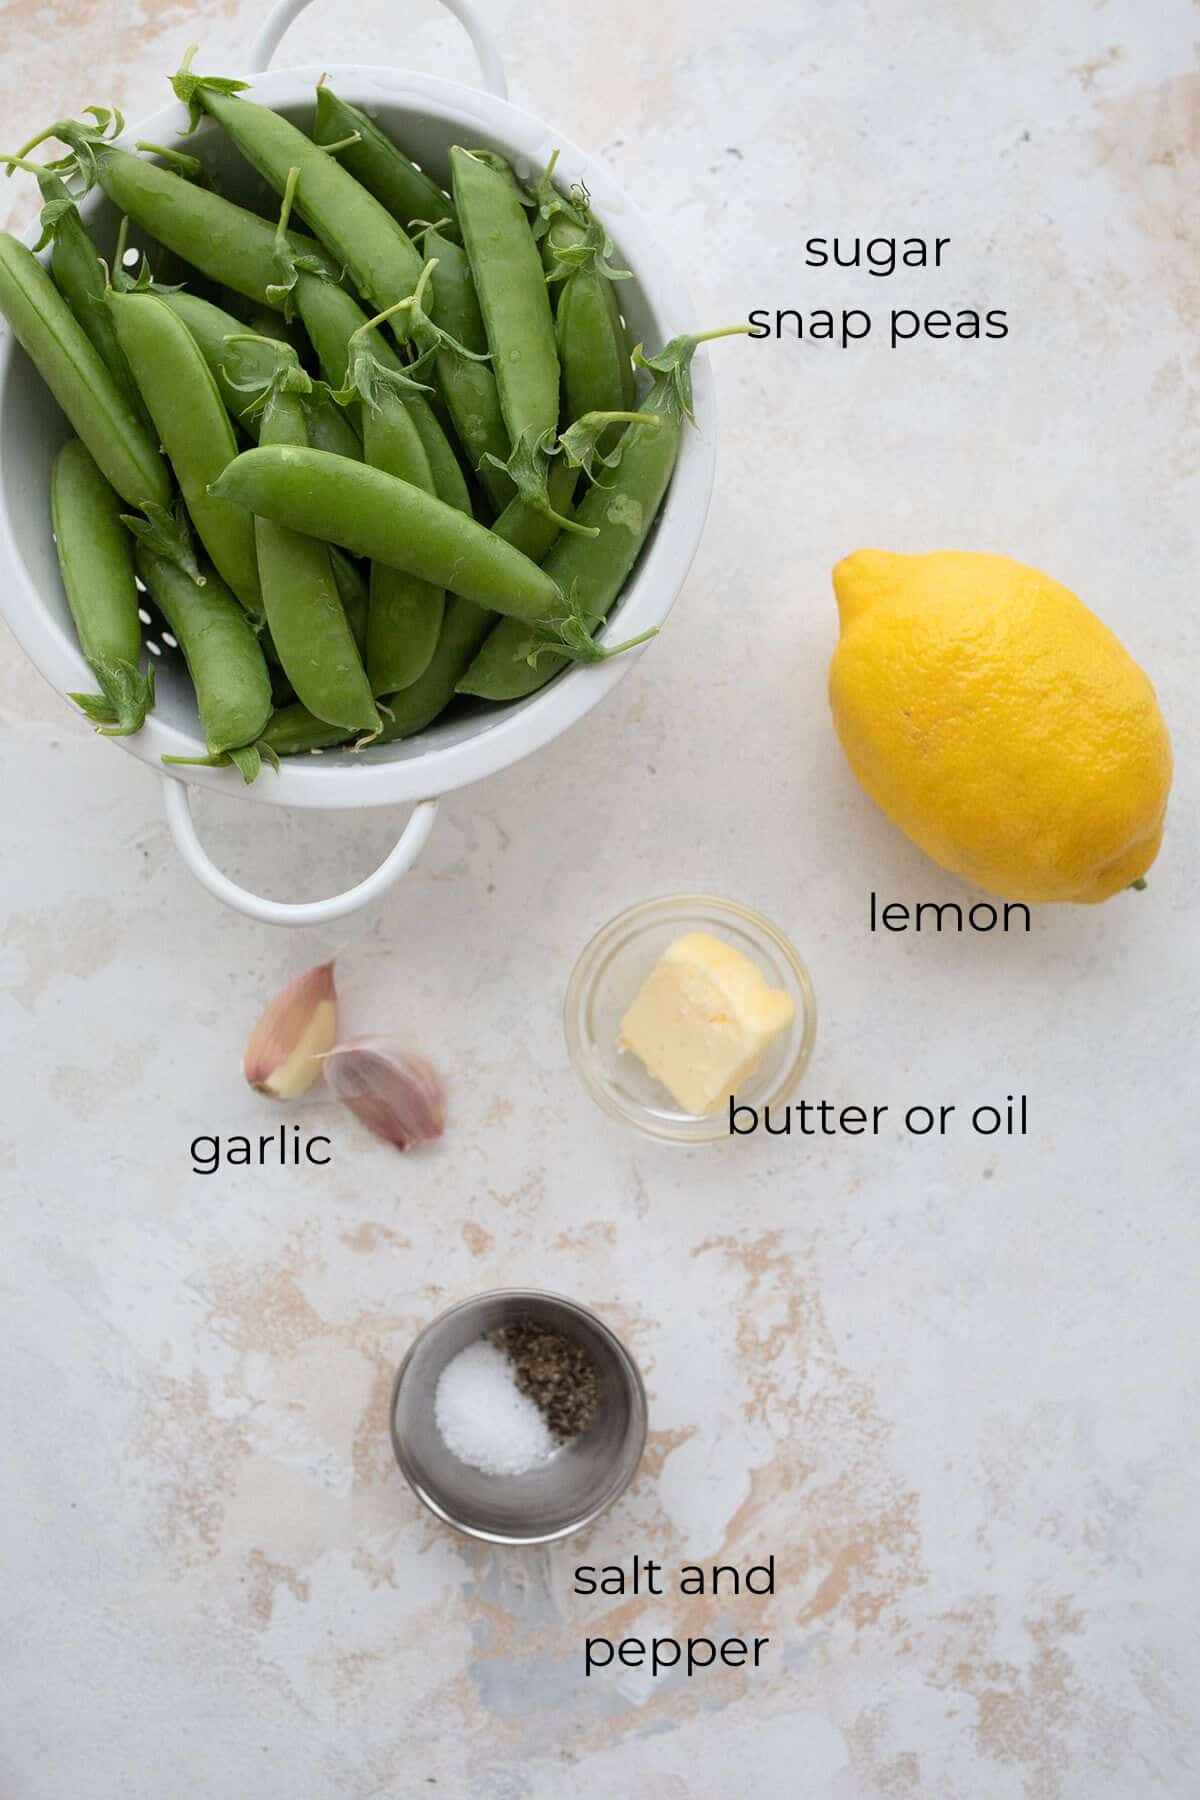 Top down image of ingredients needed for lemon garlic sugar snap peas.